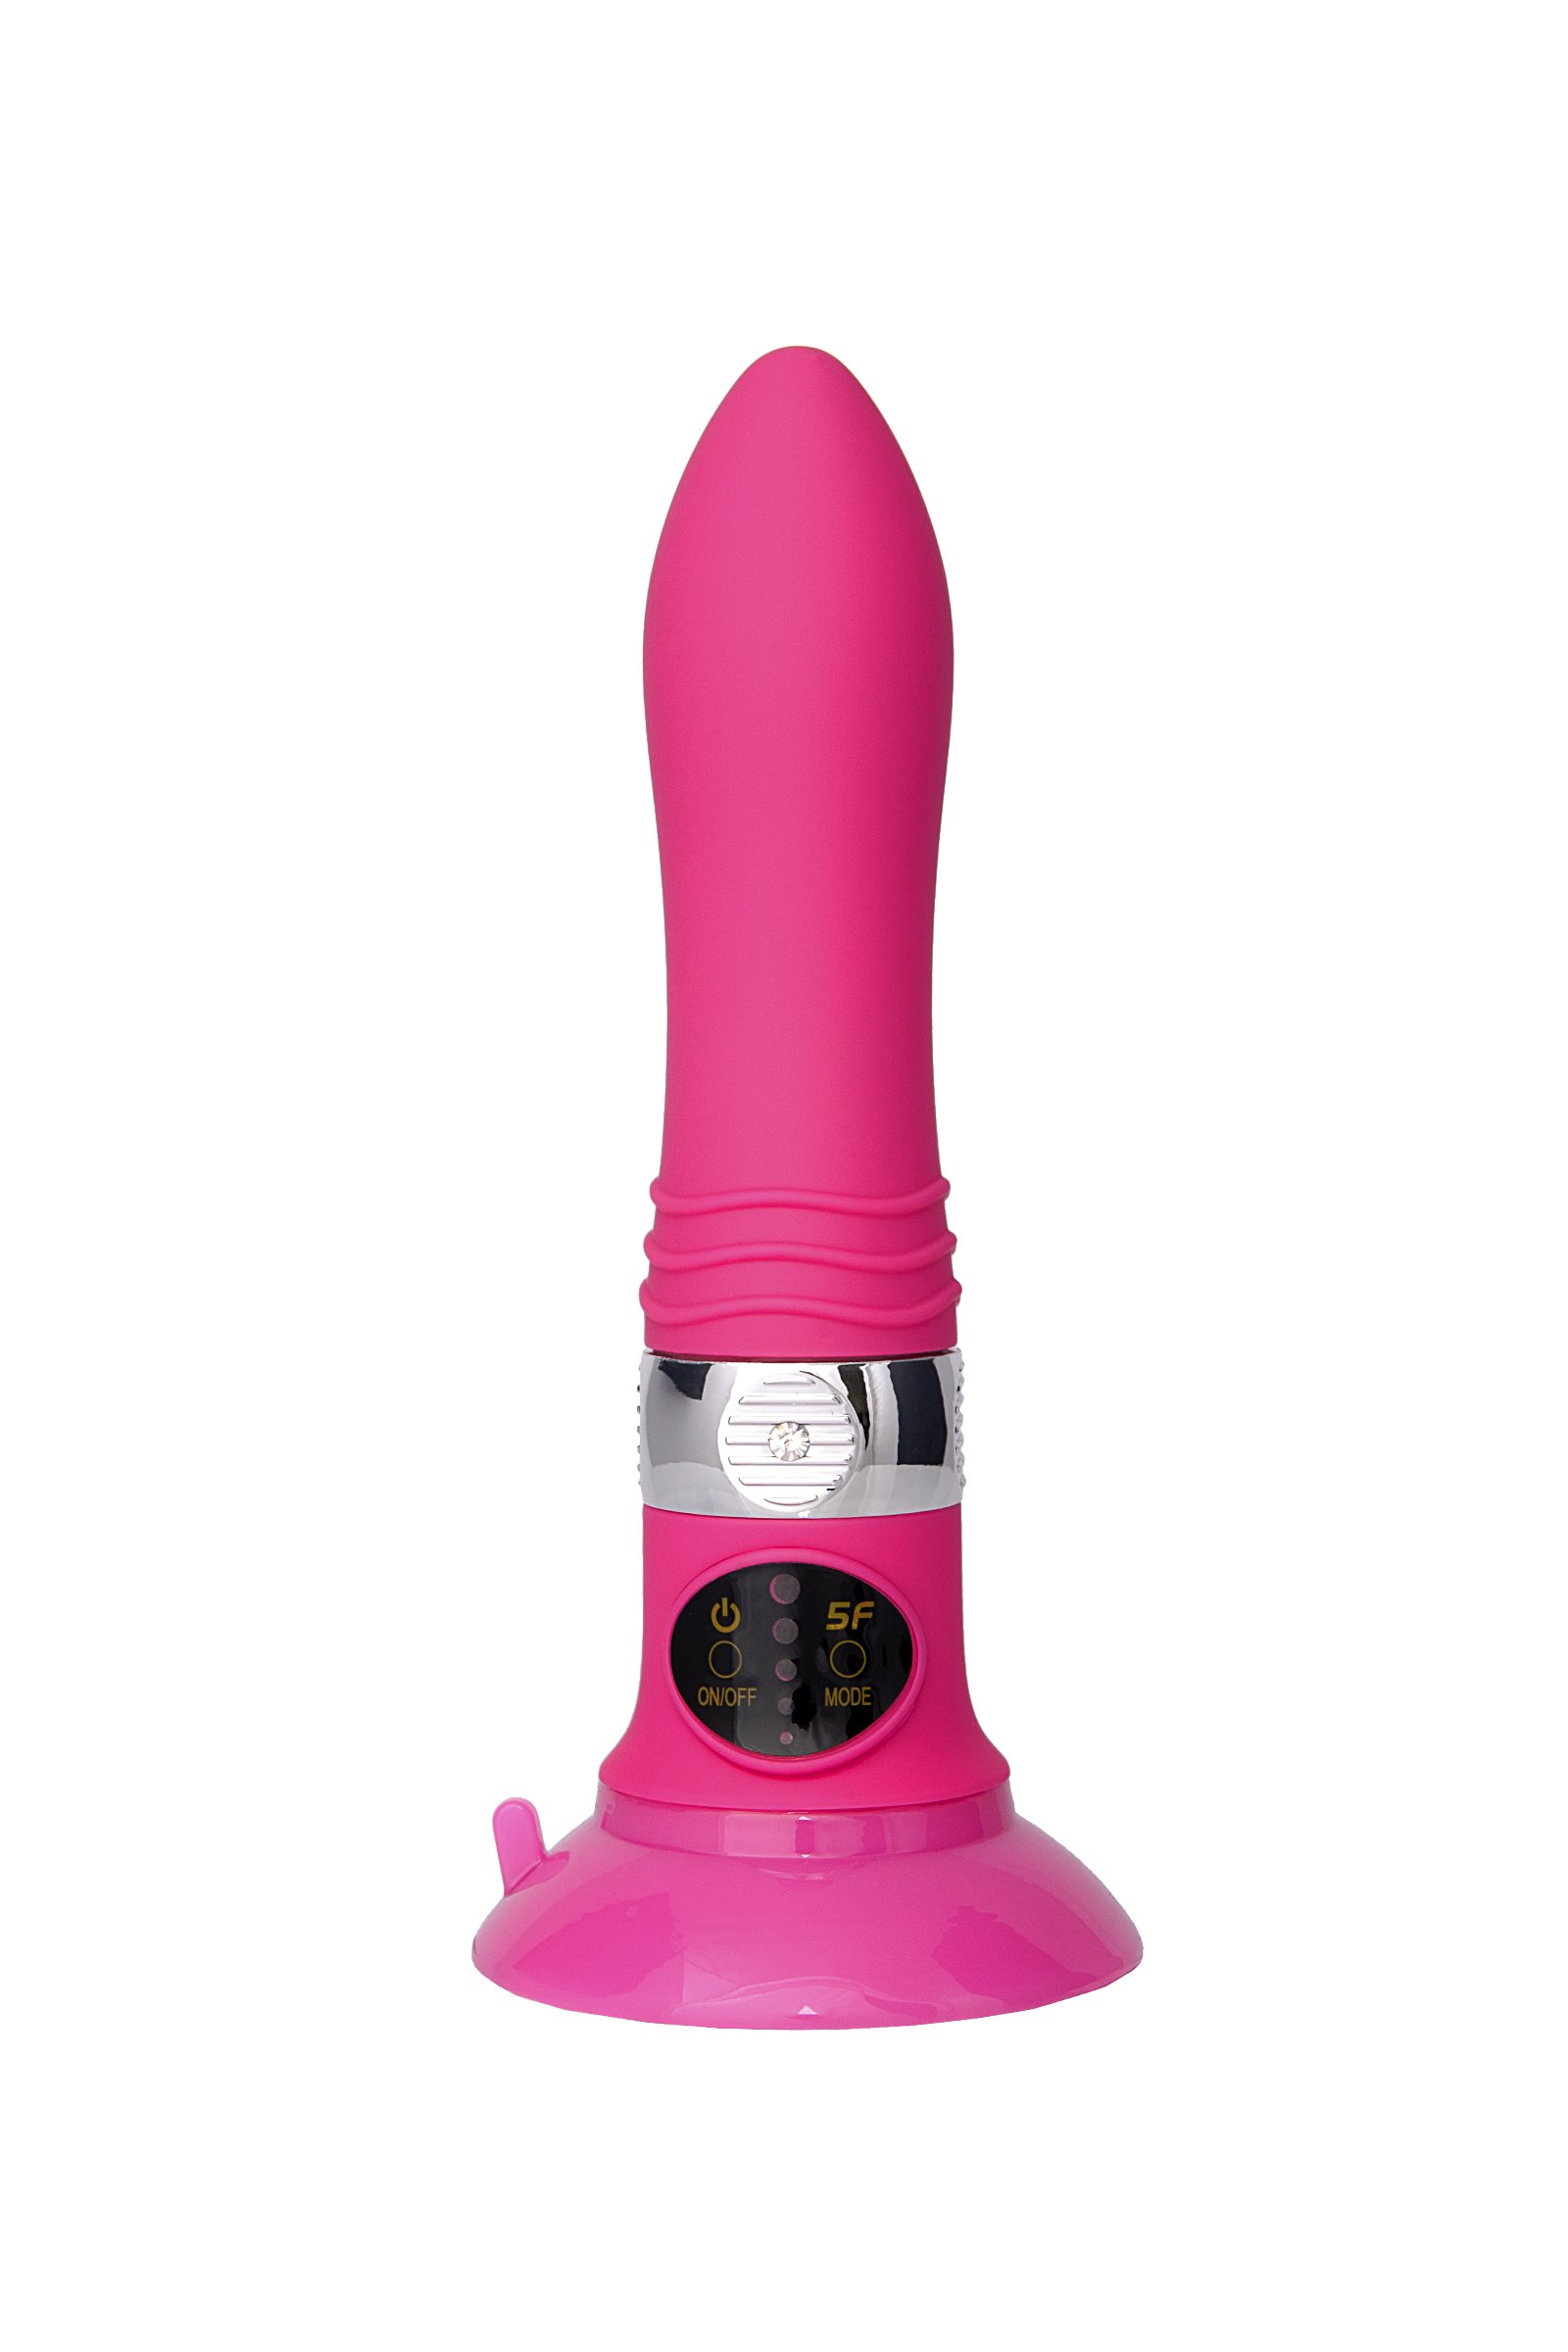 Вибратор SEXUS со сменной панелью управления, 18.5 см, розовый